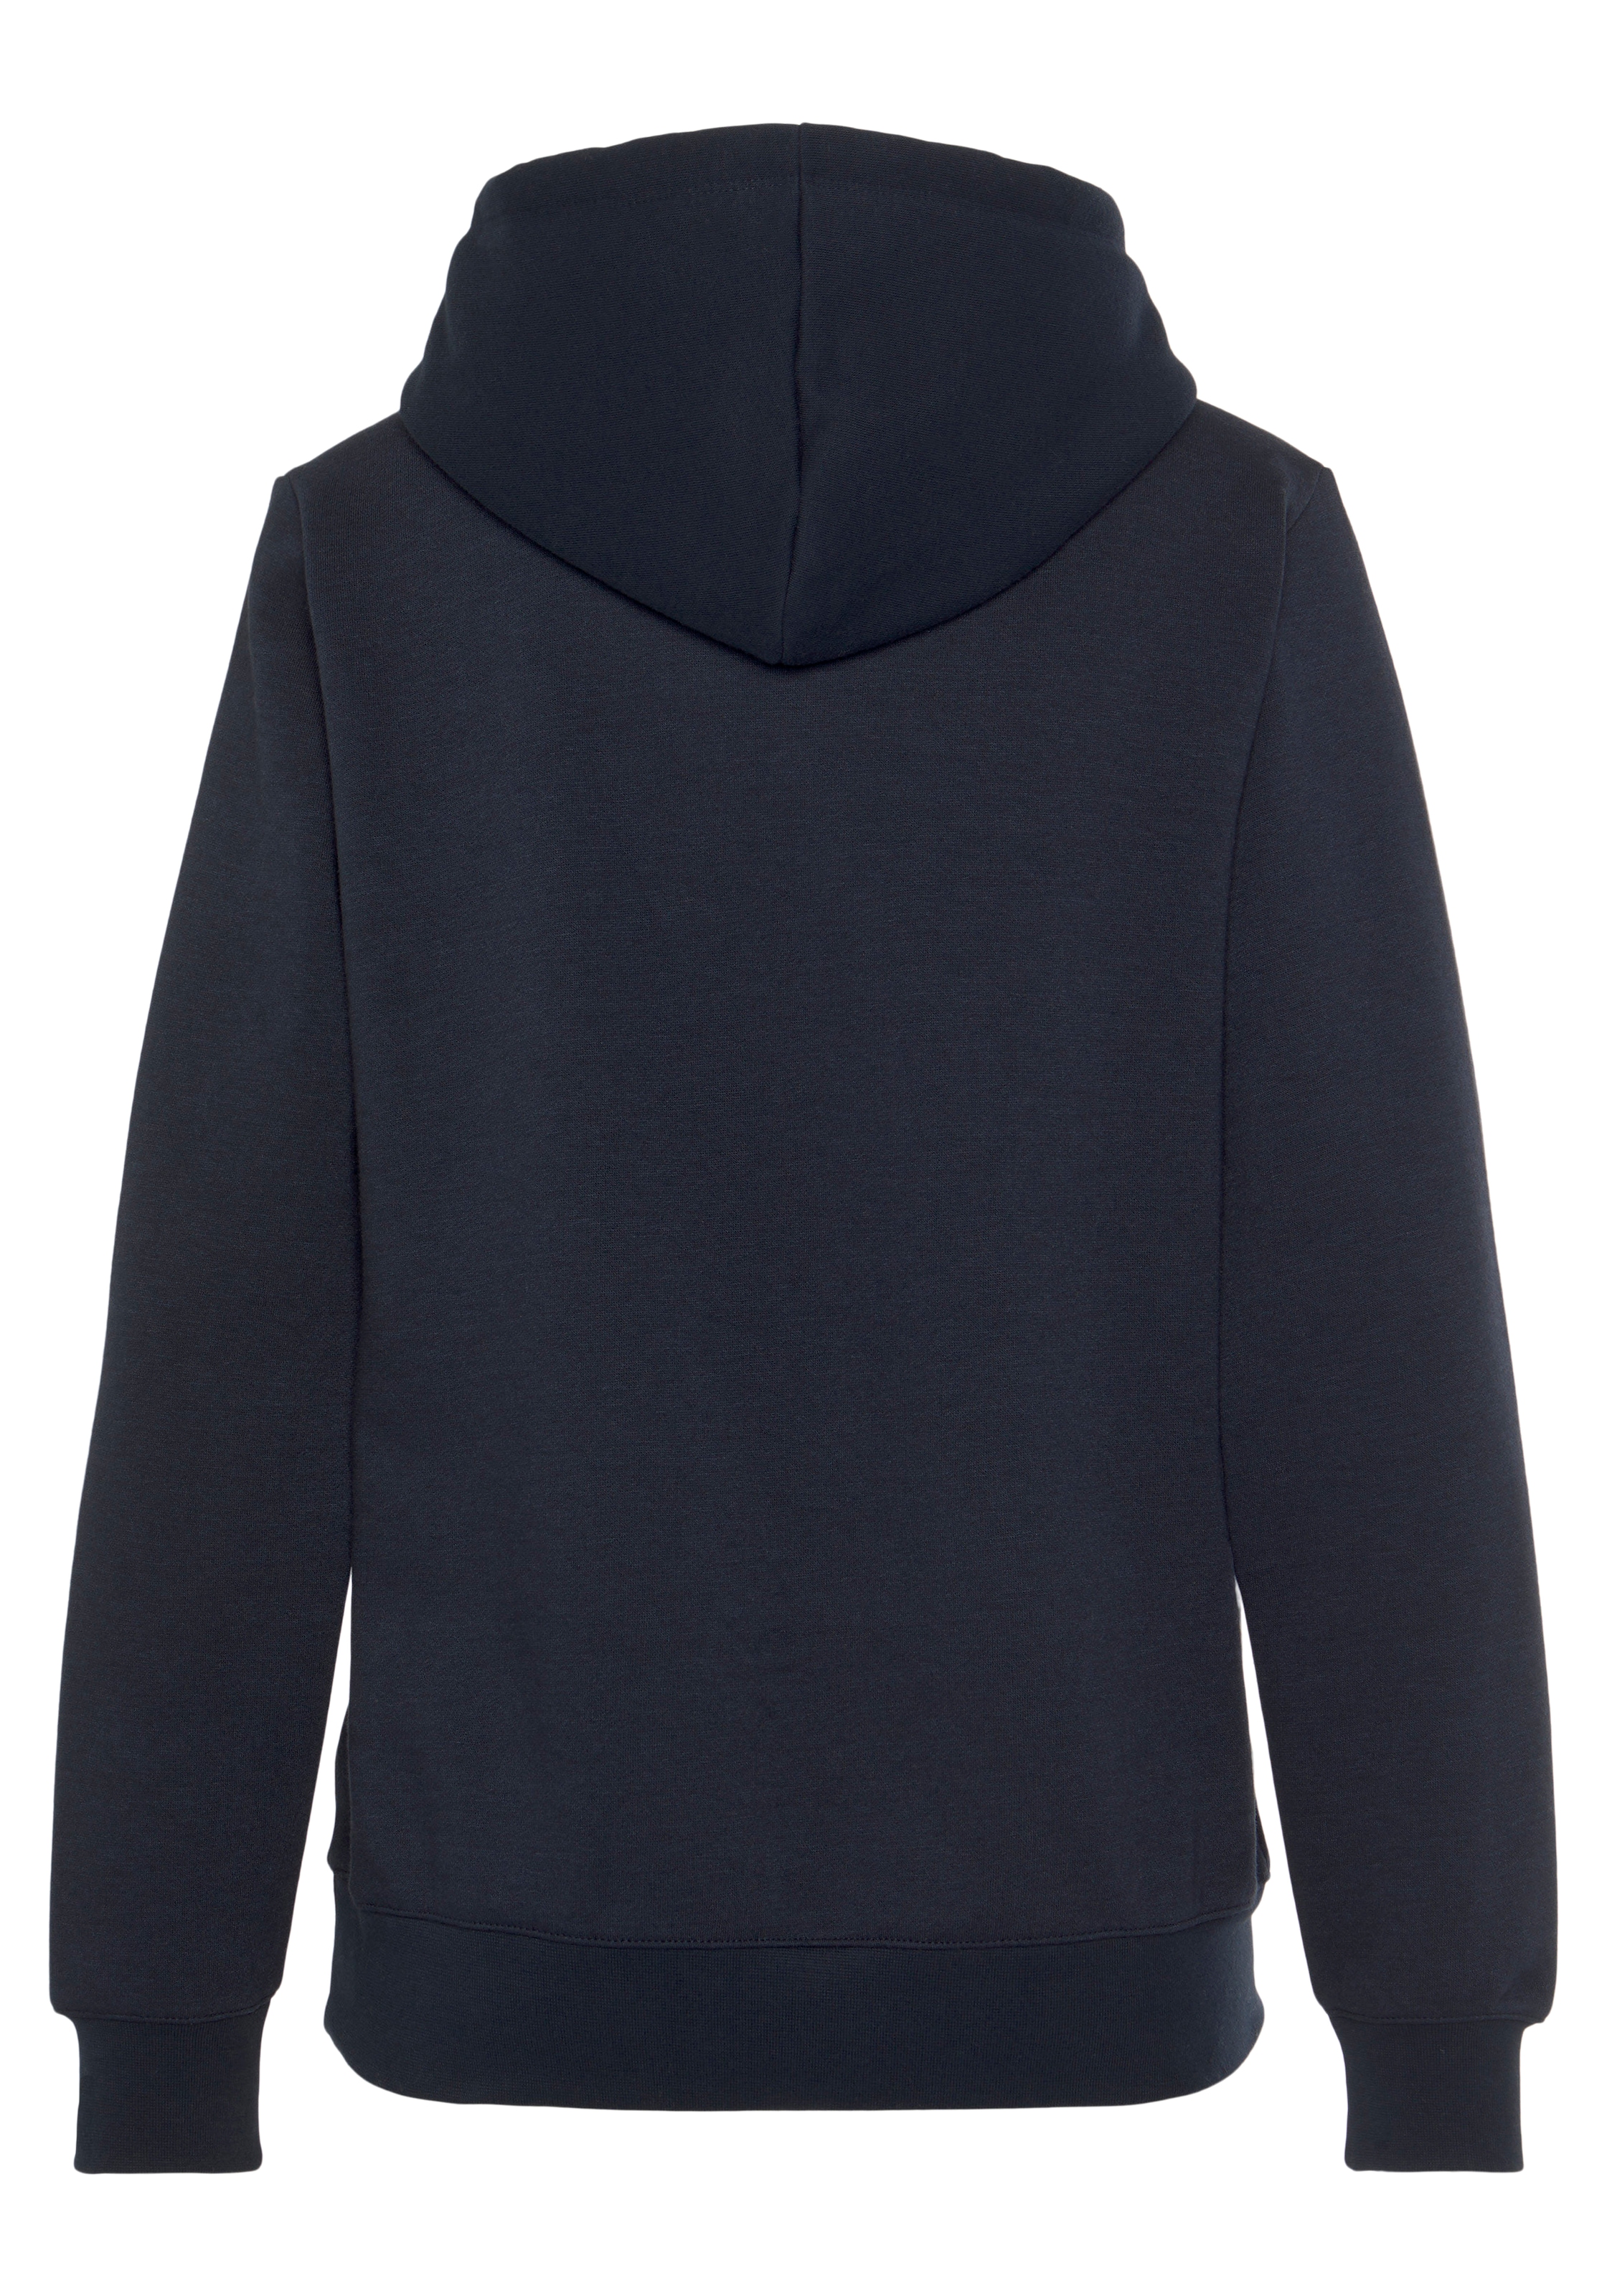 ♕ Champion Sweatshirt »Classic Hooded Sweatshirt large Log«  versandkostenfrei bestellen